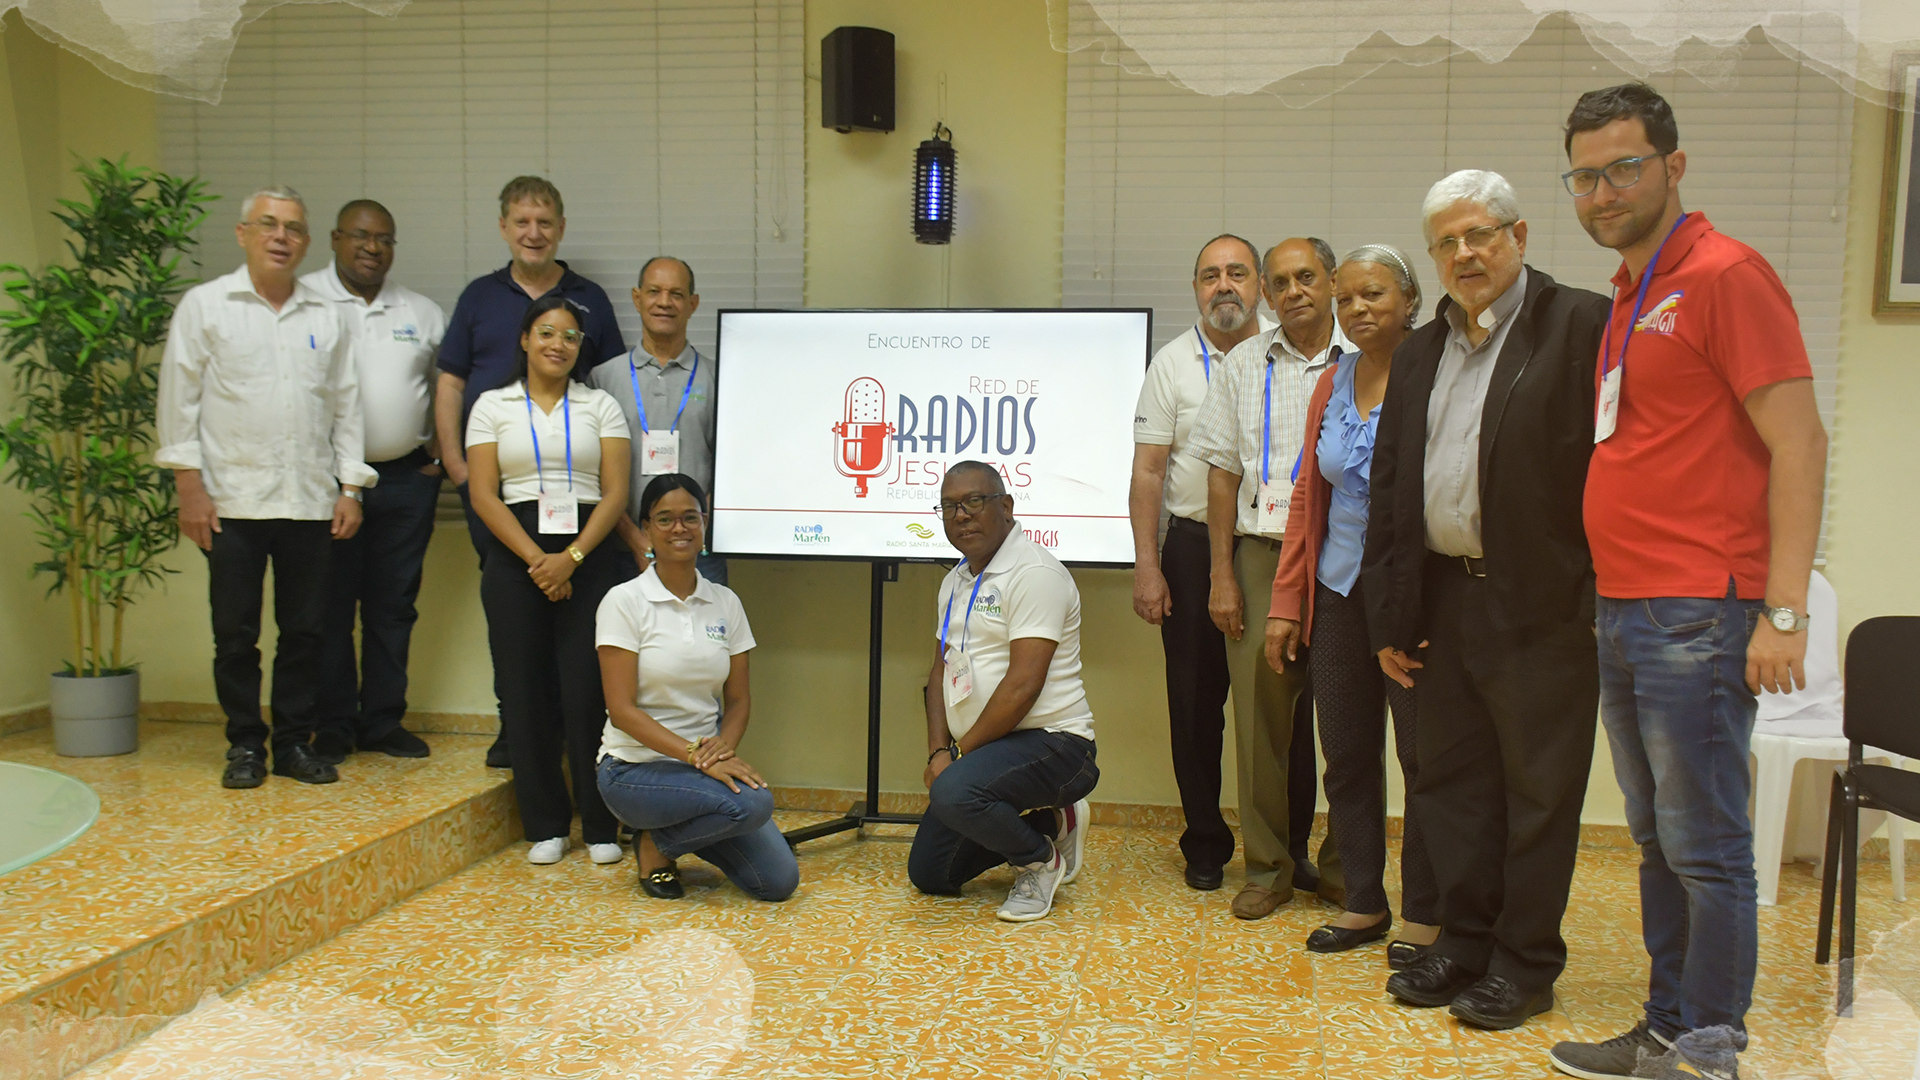 América Latina – La Red de Radios Jesuitas en República Dominicana construye un itinerario común